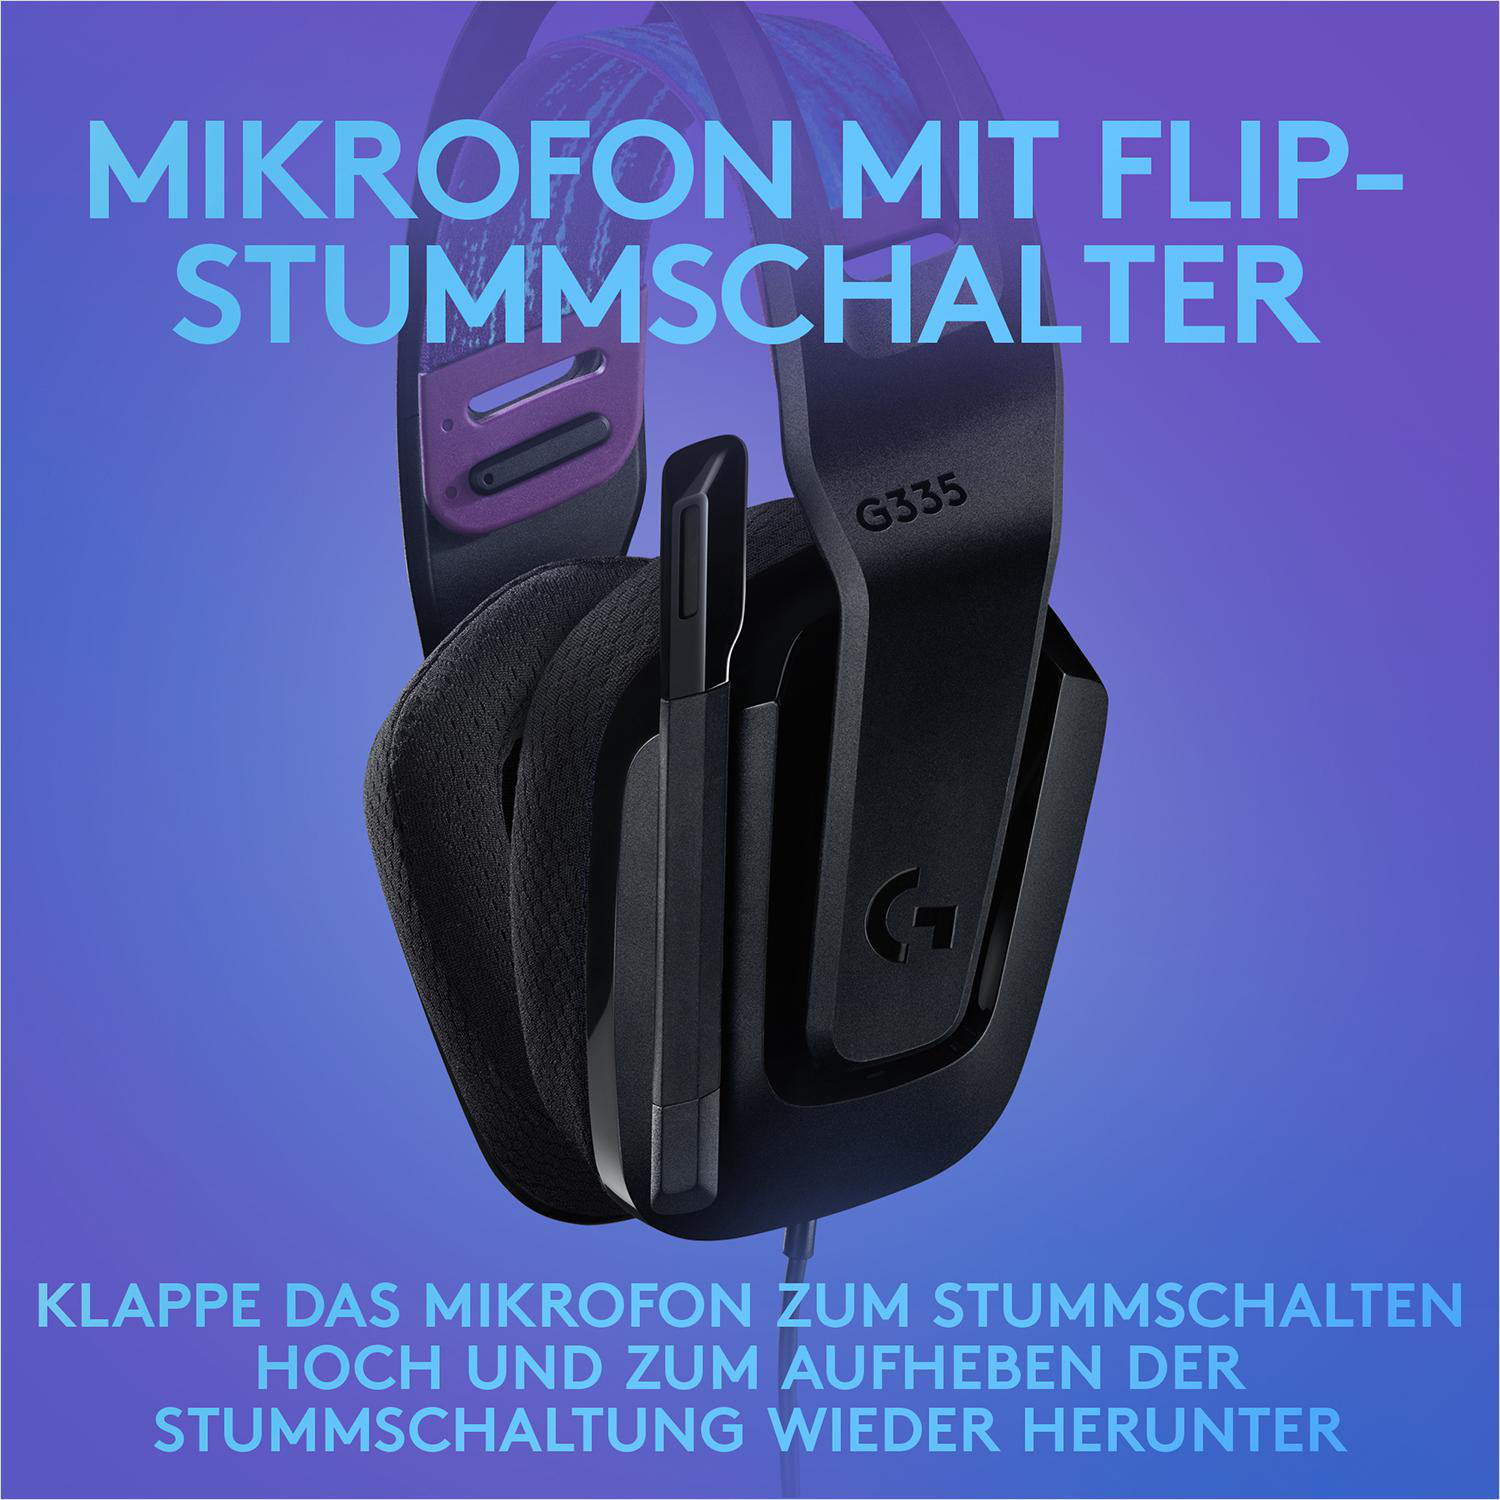 Schwarz Gaming Over-ear Gaming-Headset, G335, Headset LOGITECH kabelgebundenes